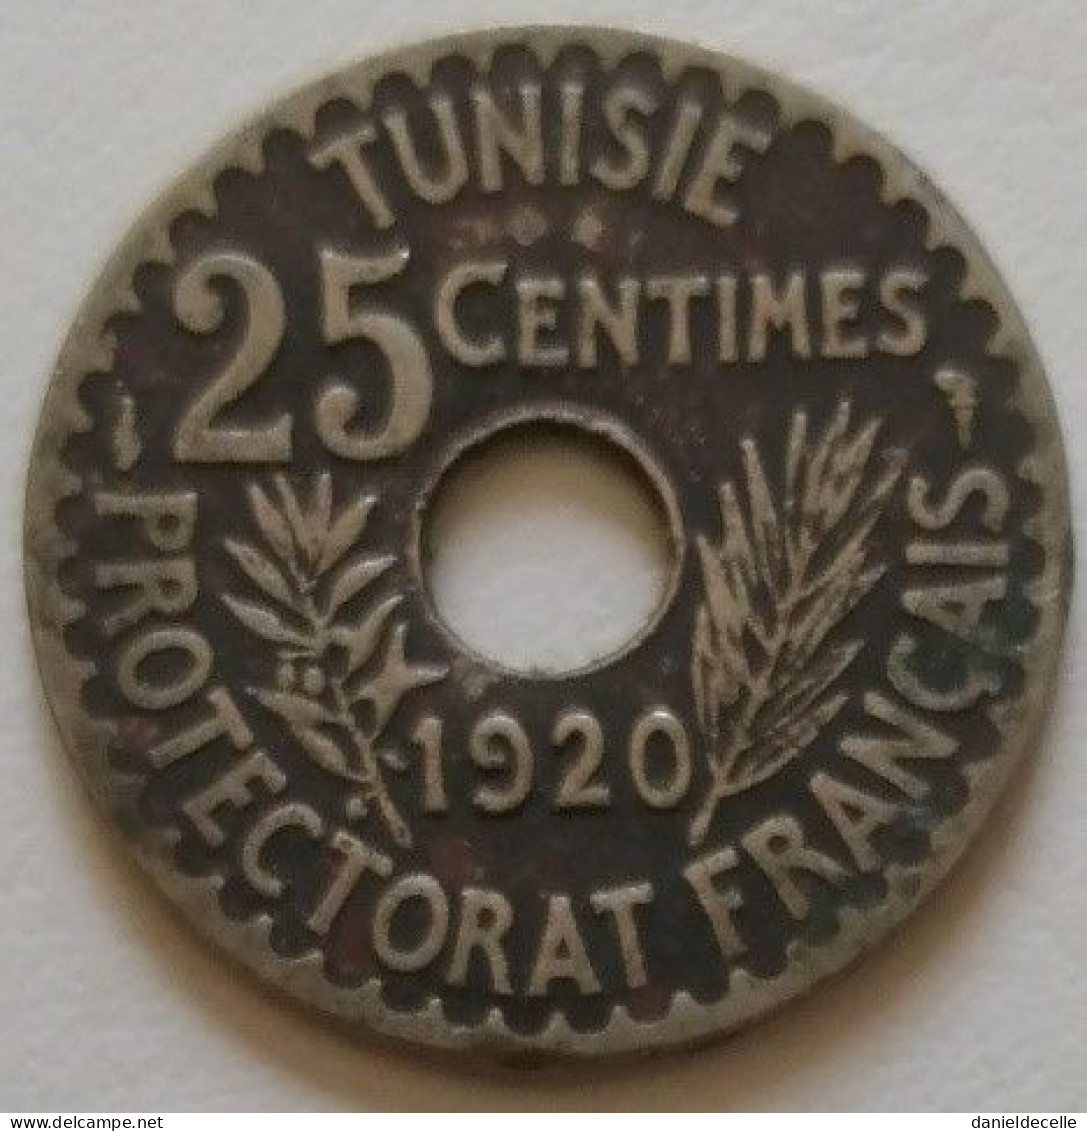 25 Centimes Tunisie 1338 (1920) - Túnez